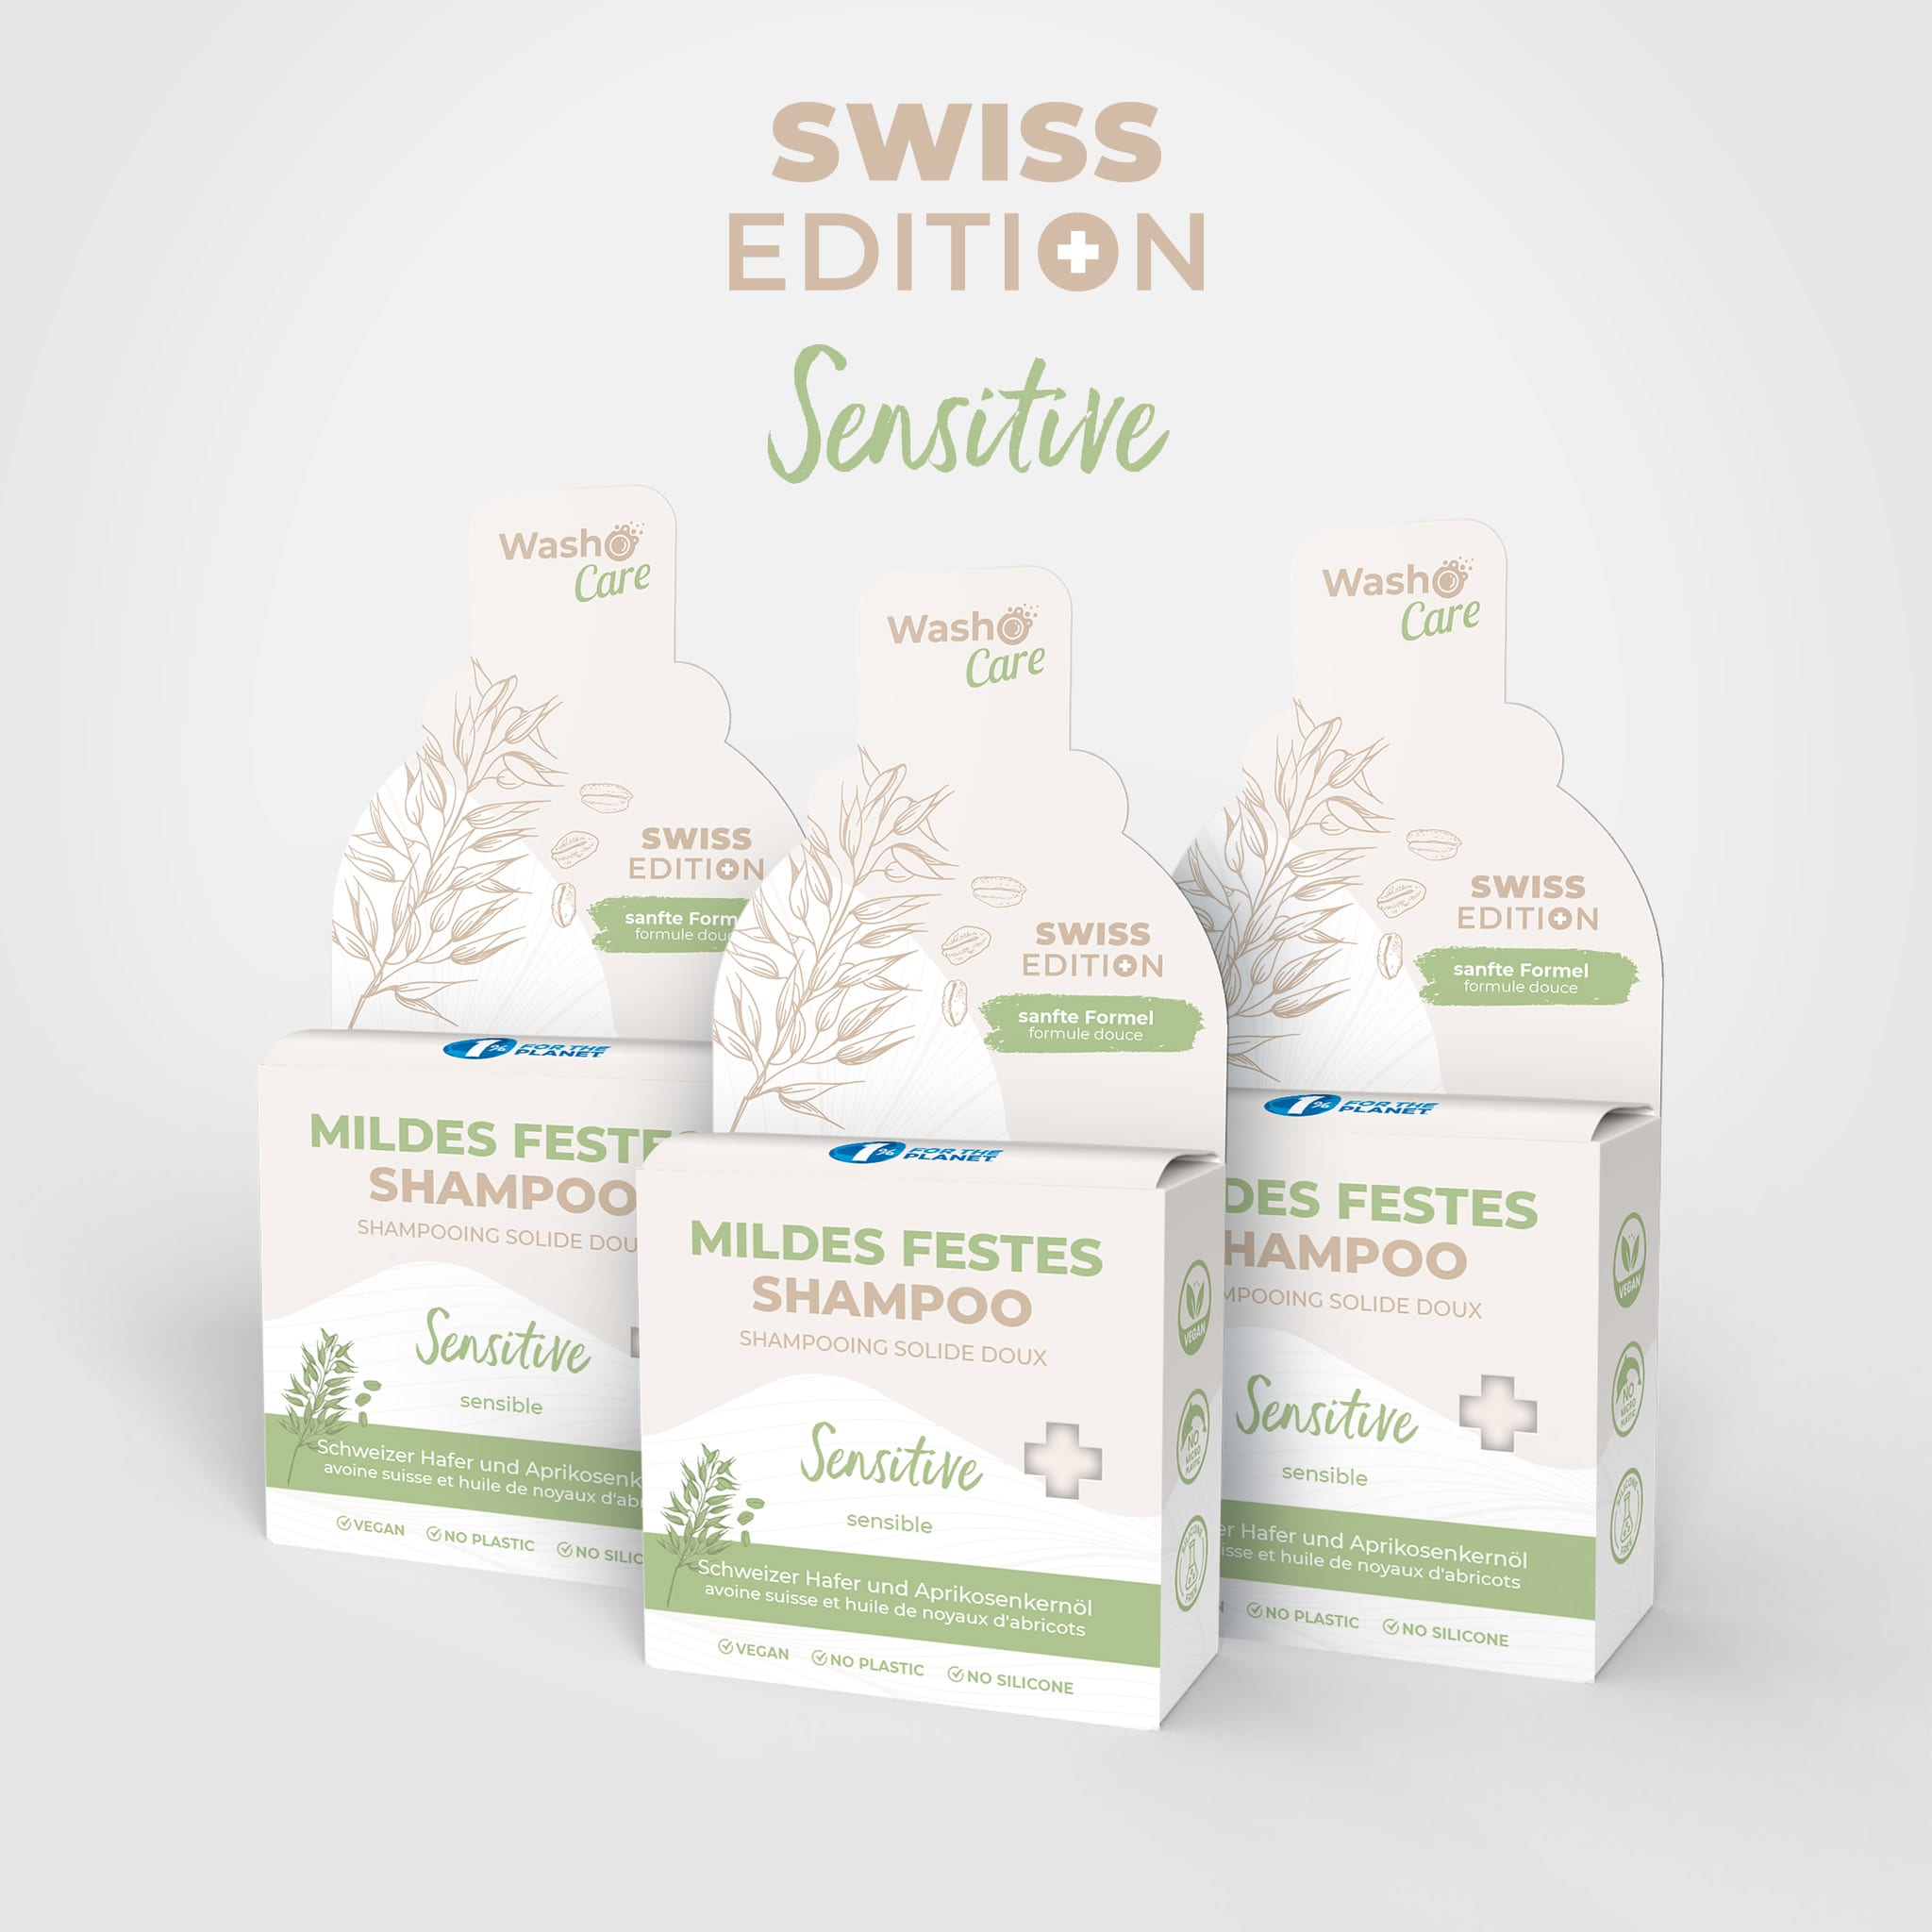 3 Washo Care Swiss Edition Shampoo solido delicato Sensitive